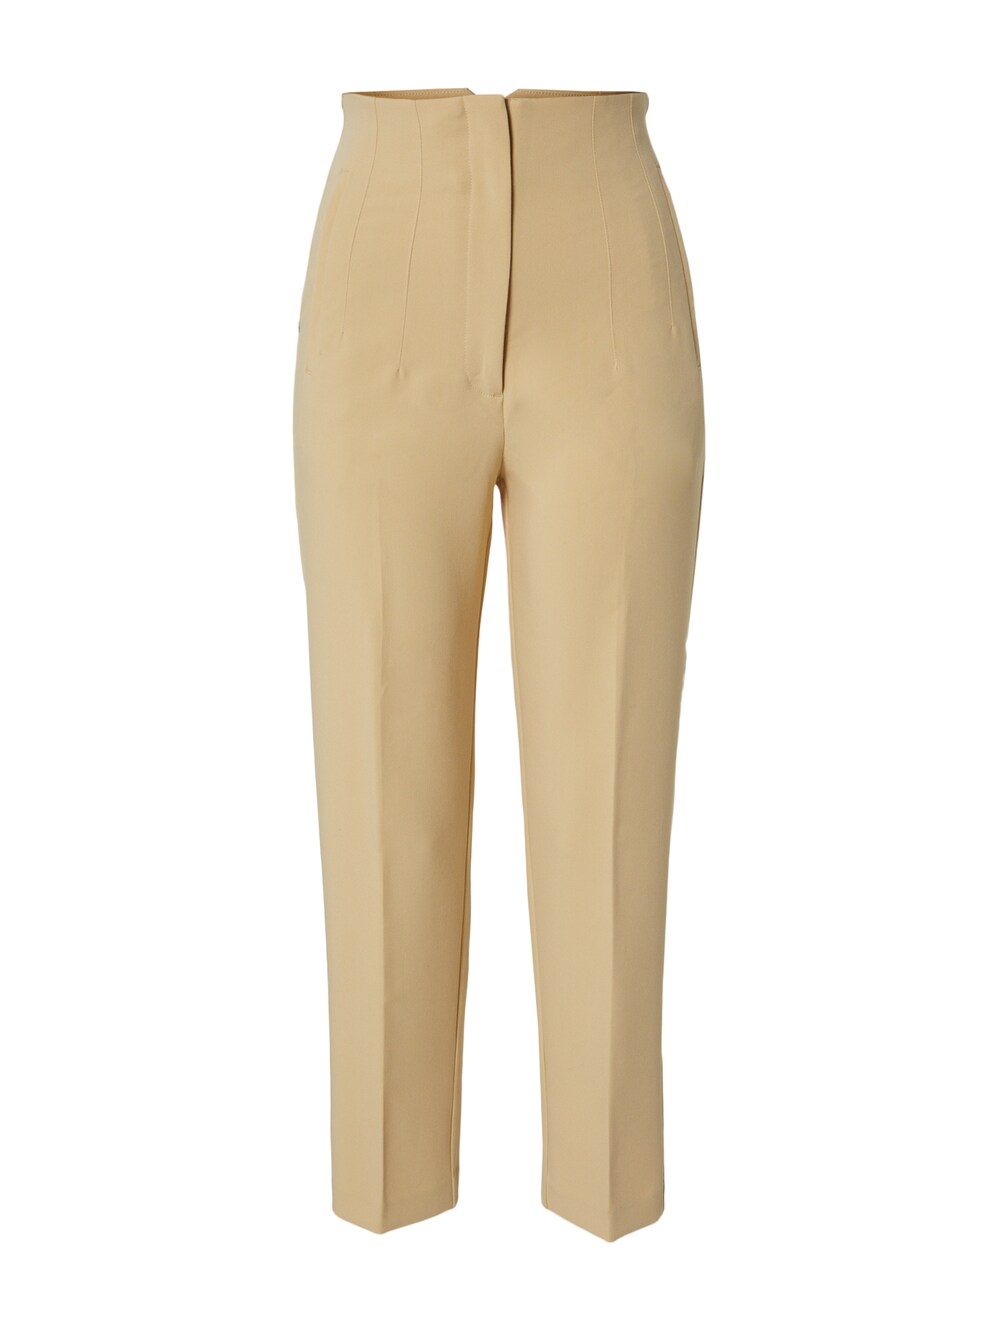 Обычные плиссированные брюки Edited Charlotta, коричневый обычные плиссированные брюки edited leona оливковый